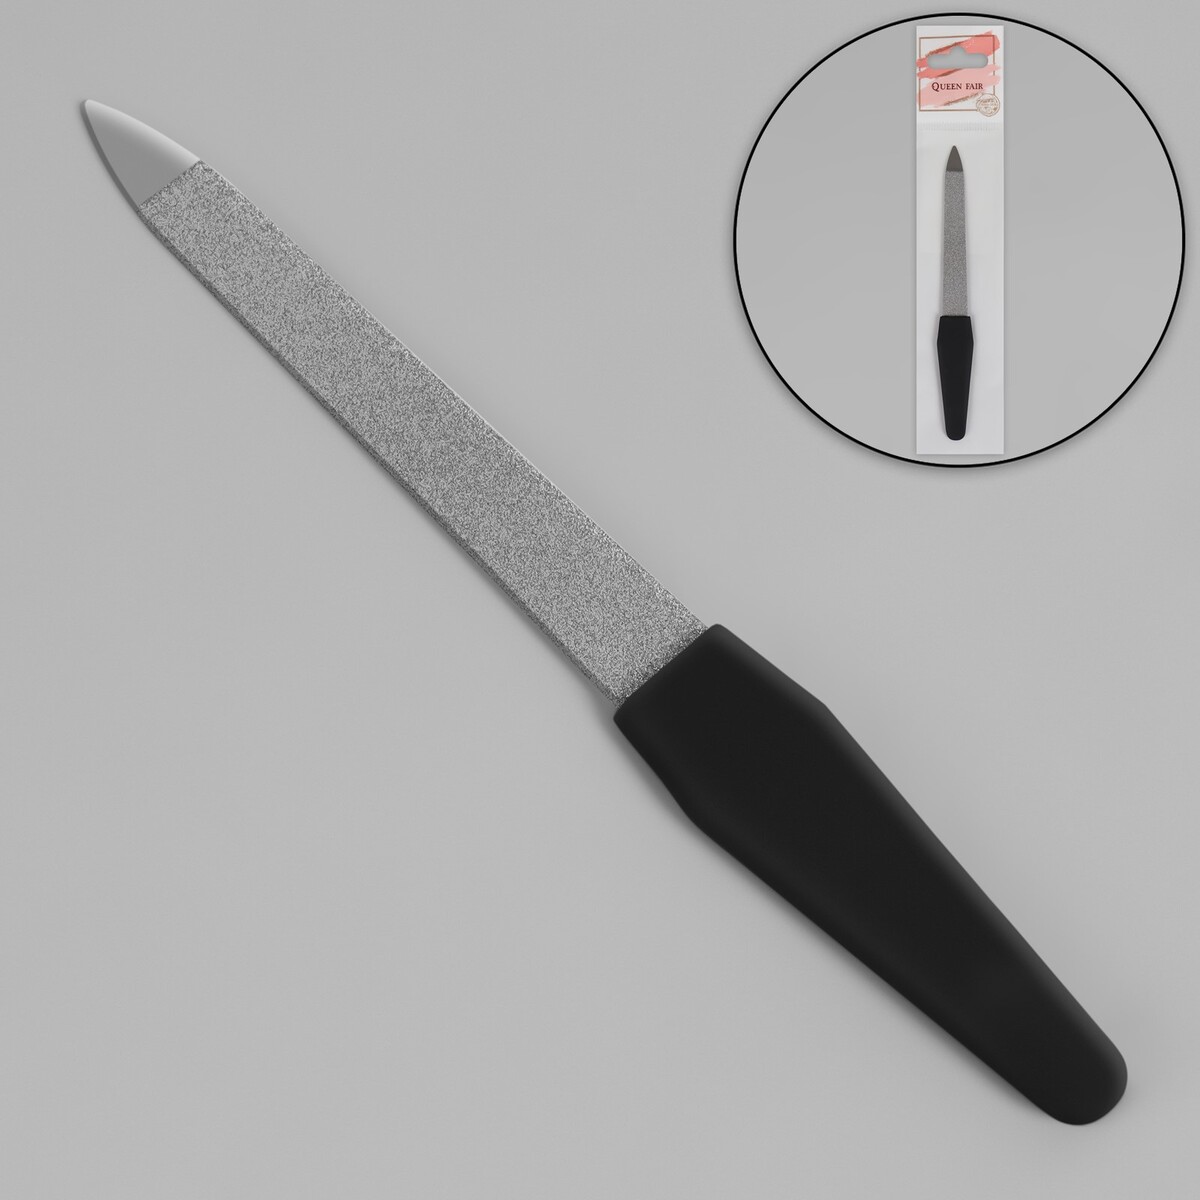 Пилка металлическая для ногтей, прорезиненная ручка, 12 см, цвет серебристый/черный пилка металлическая для ногтей перфорированная 15 см